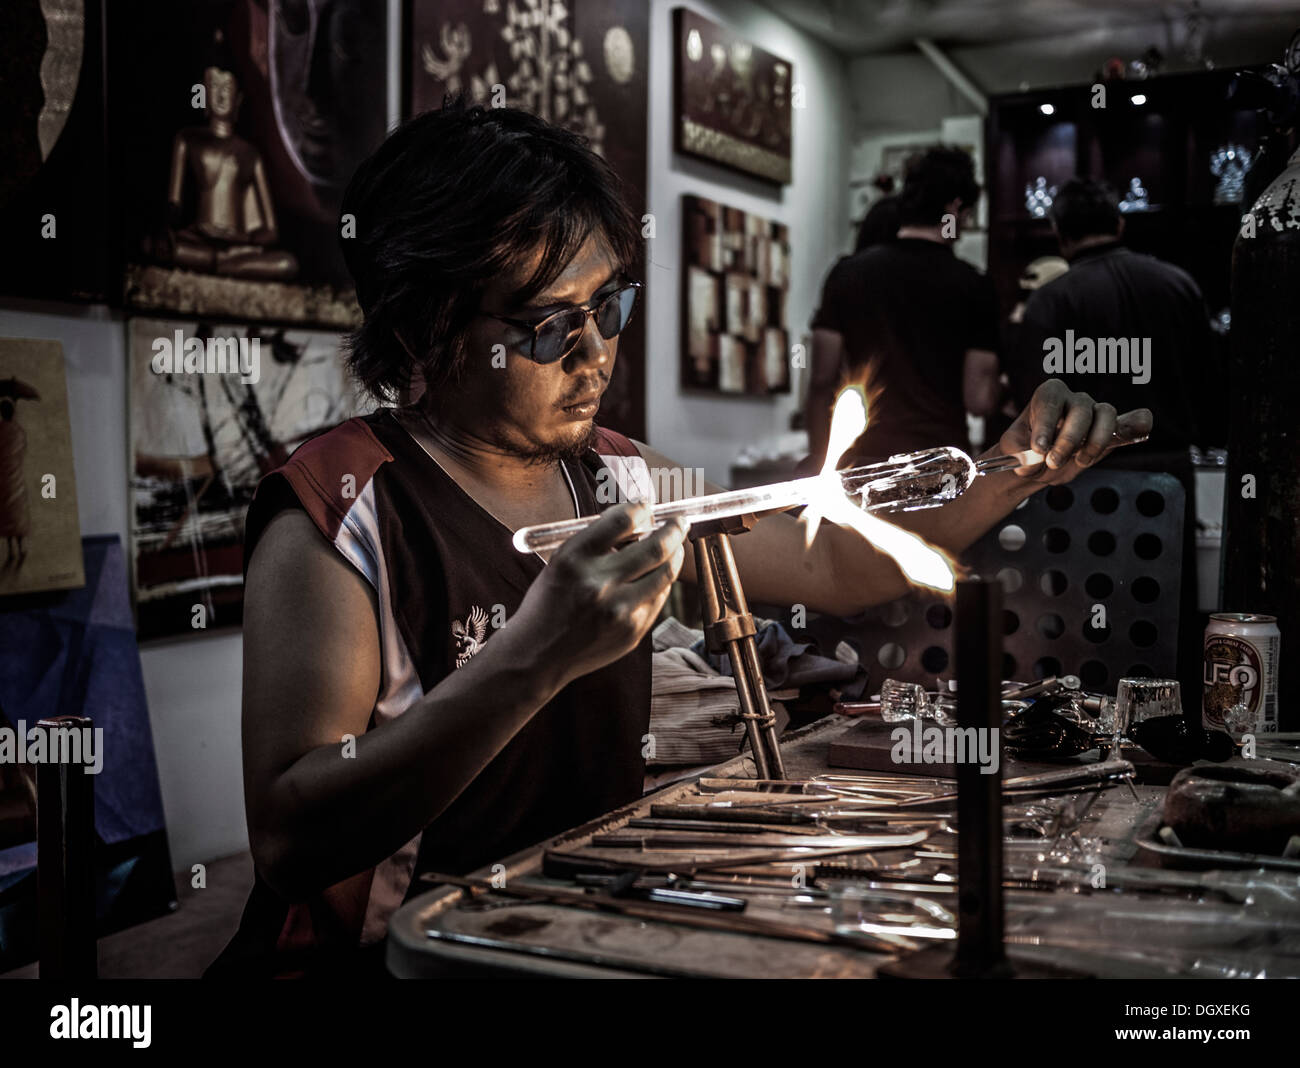 Gläserner thailändischer Handwerker mit Schutzbrille und einer oxylen Acetylenbrenner. Thailand S. E. Asien Stockfoto